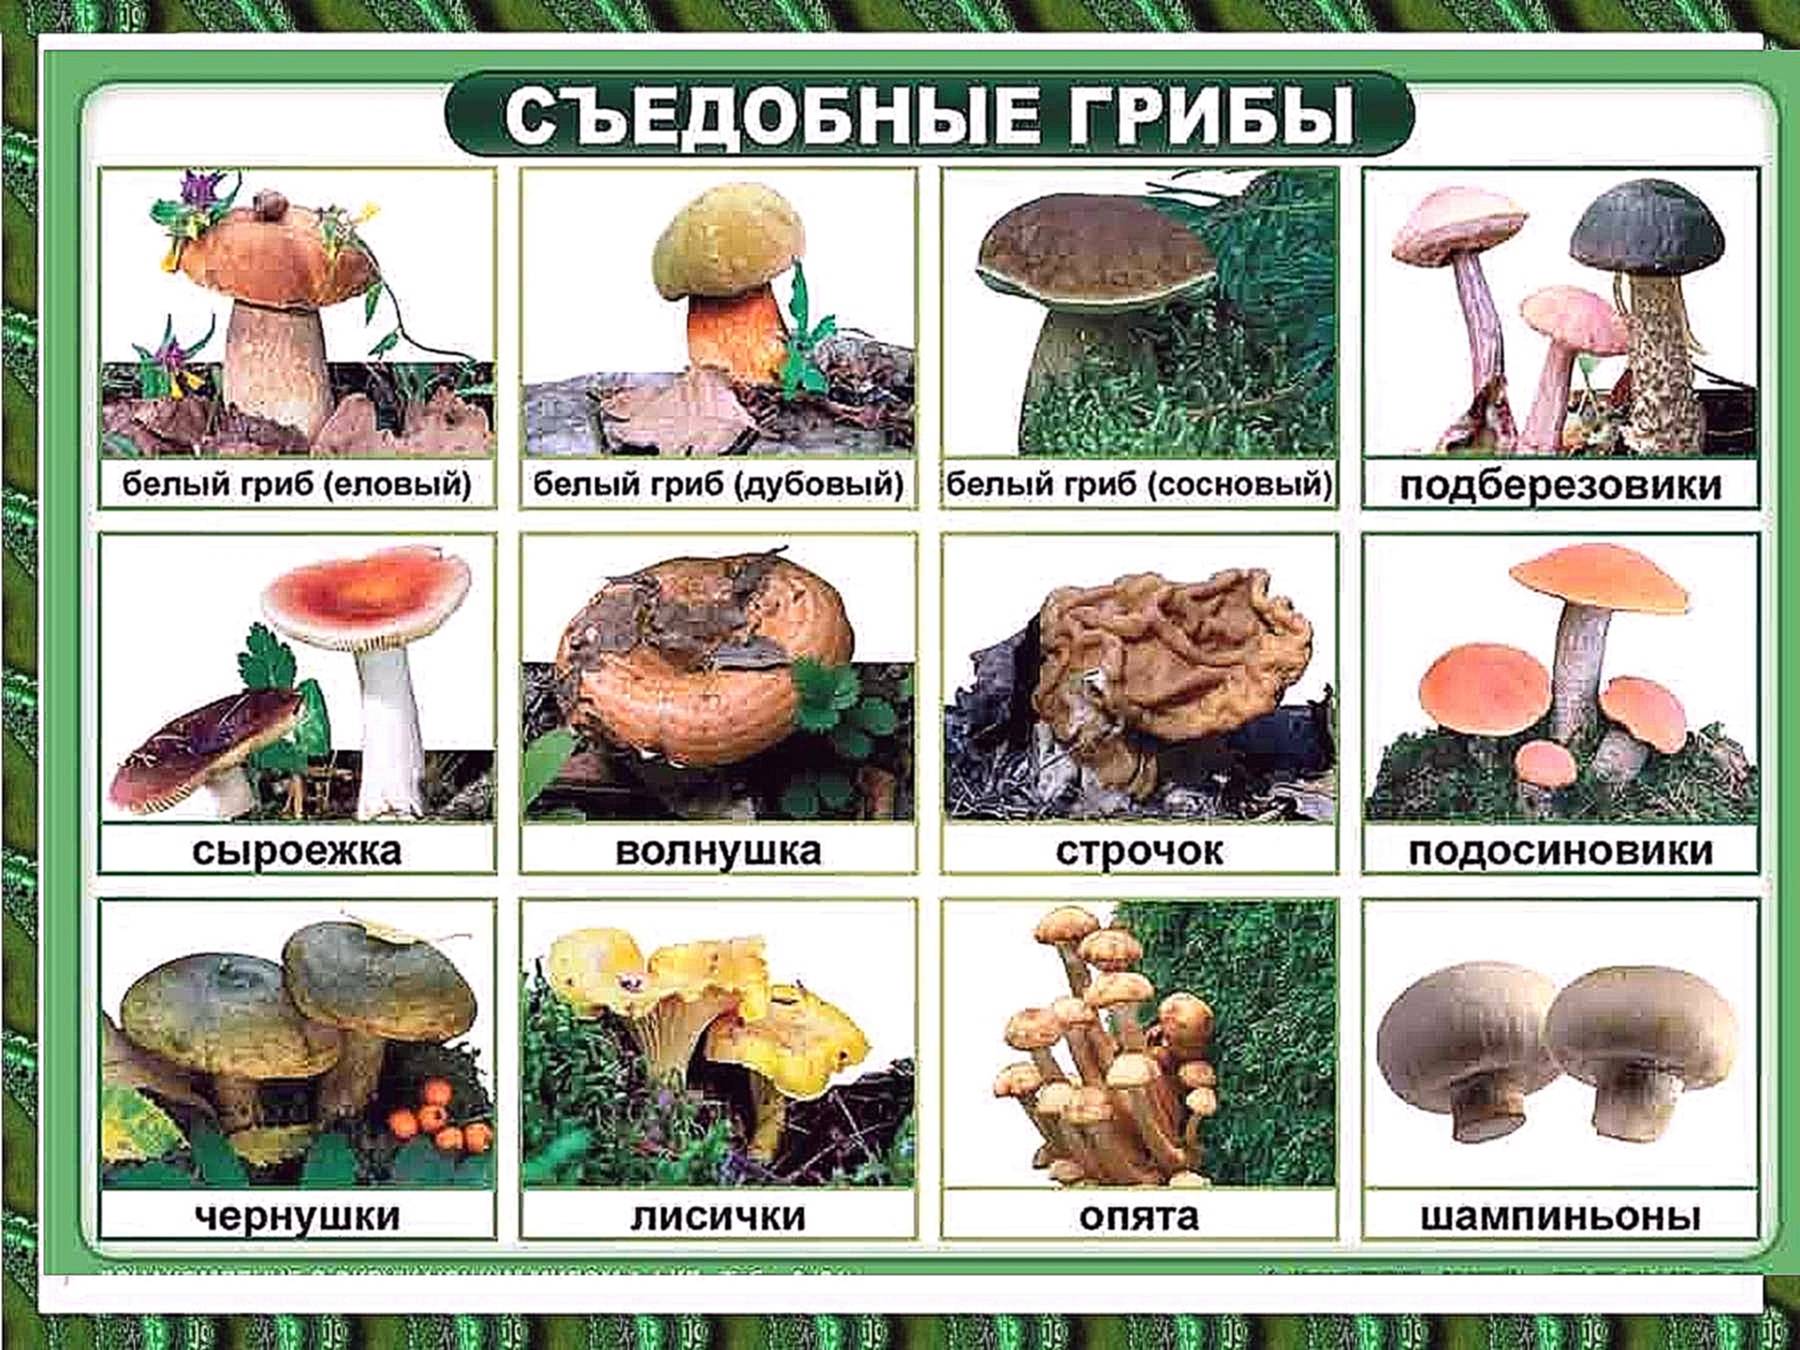 Какие грибы самые вкусные и полезные